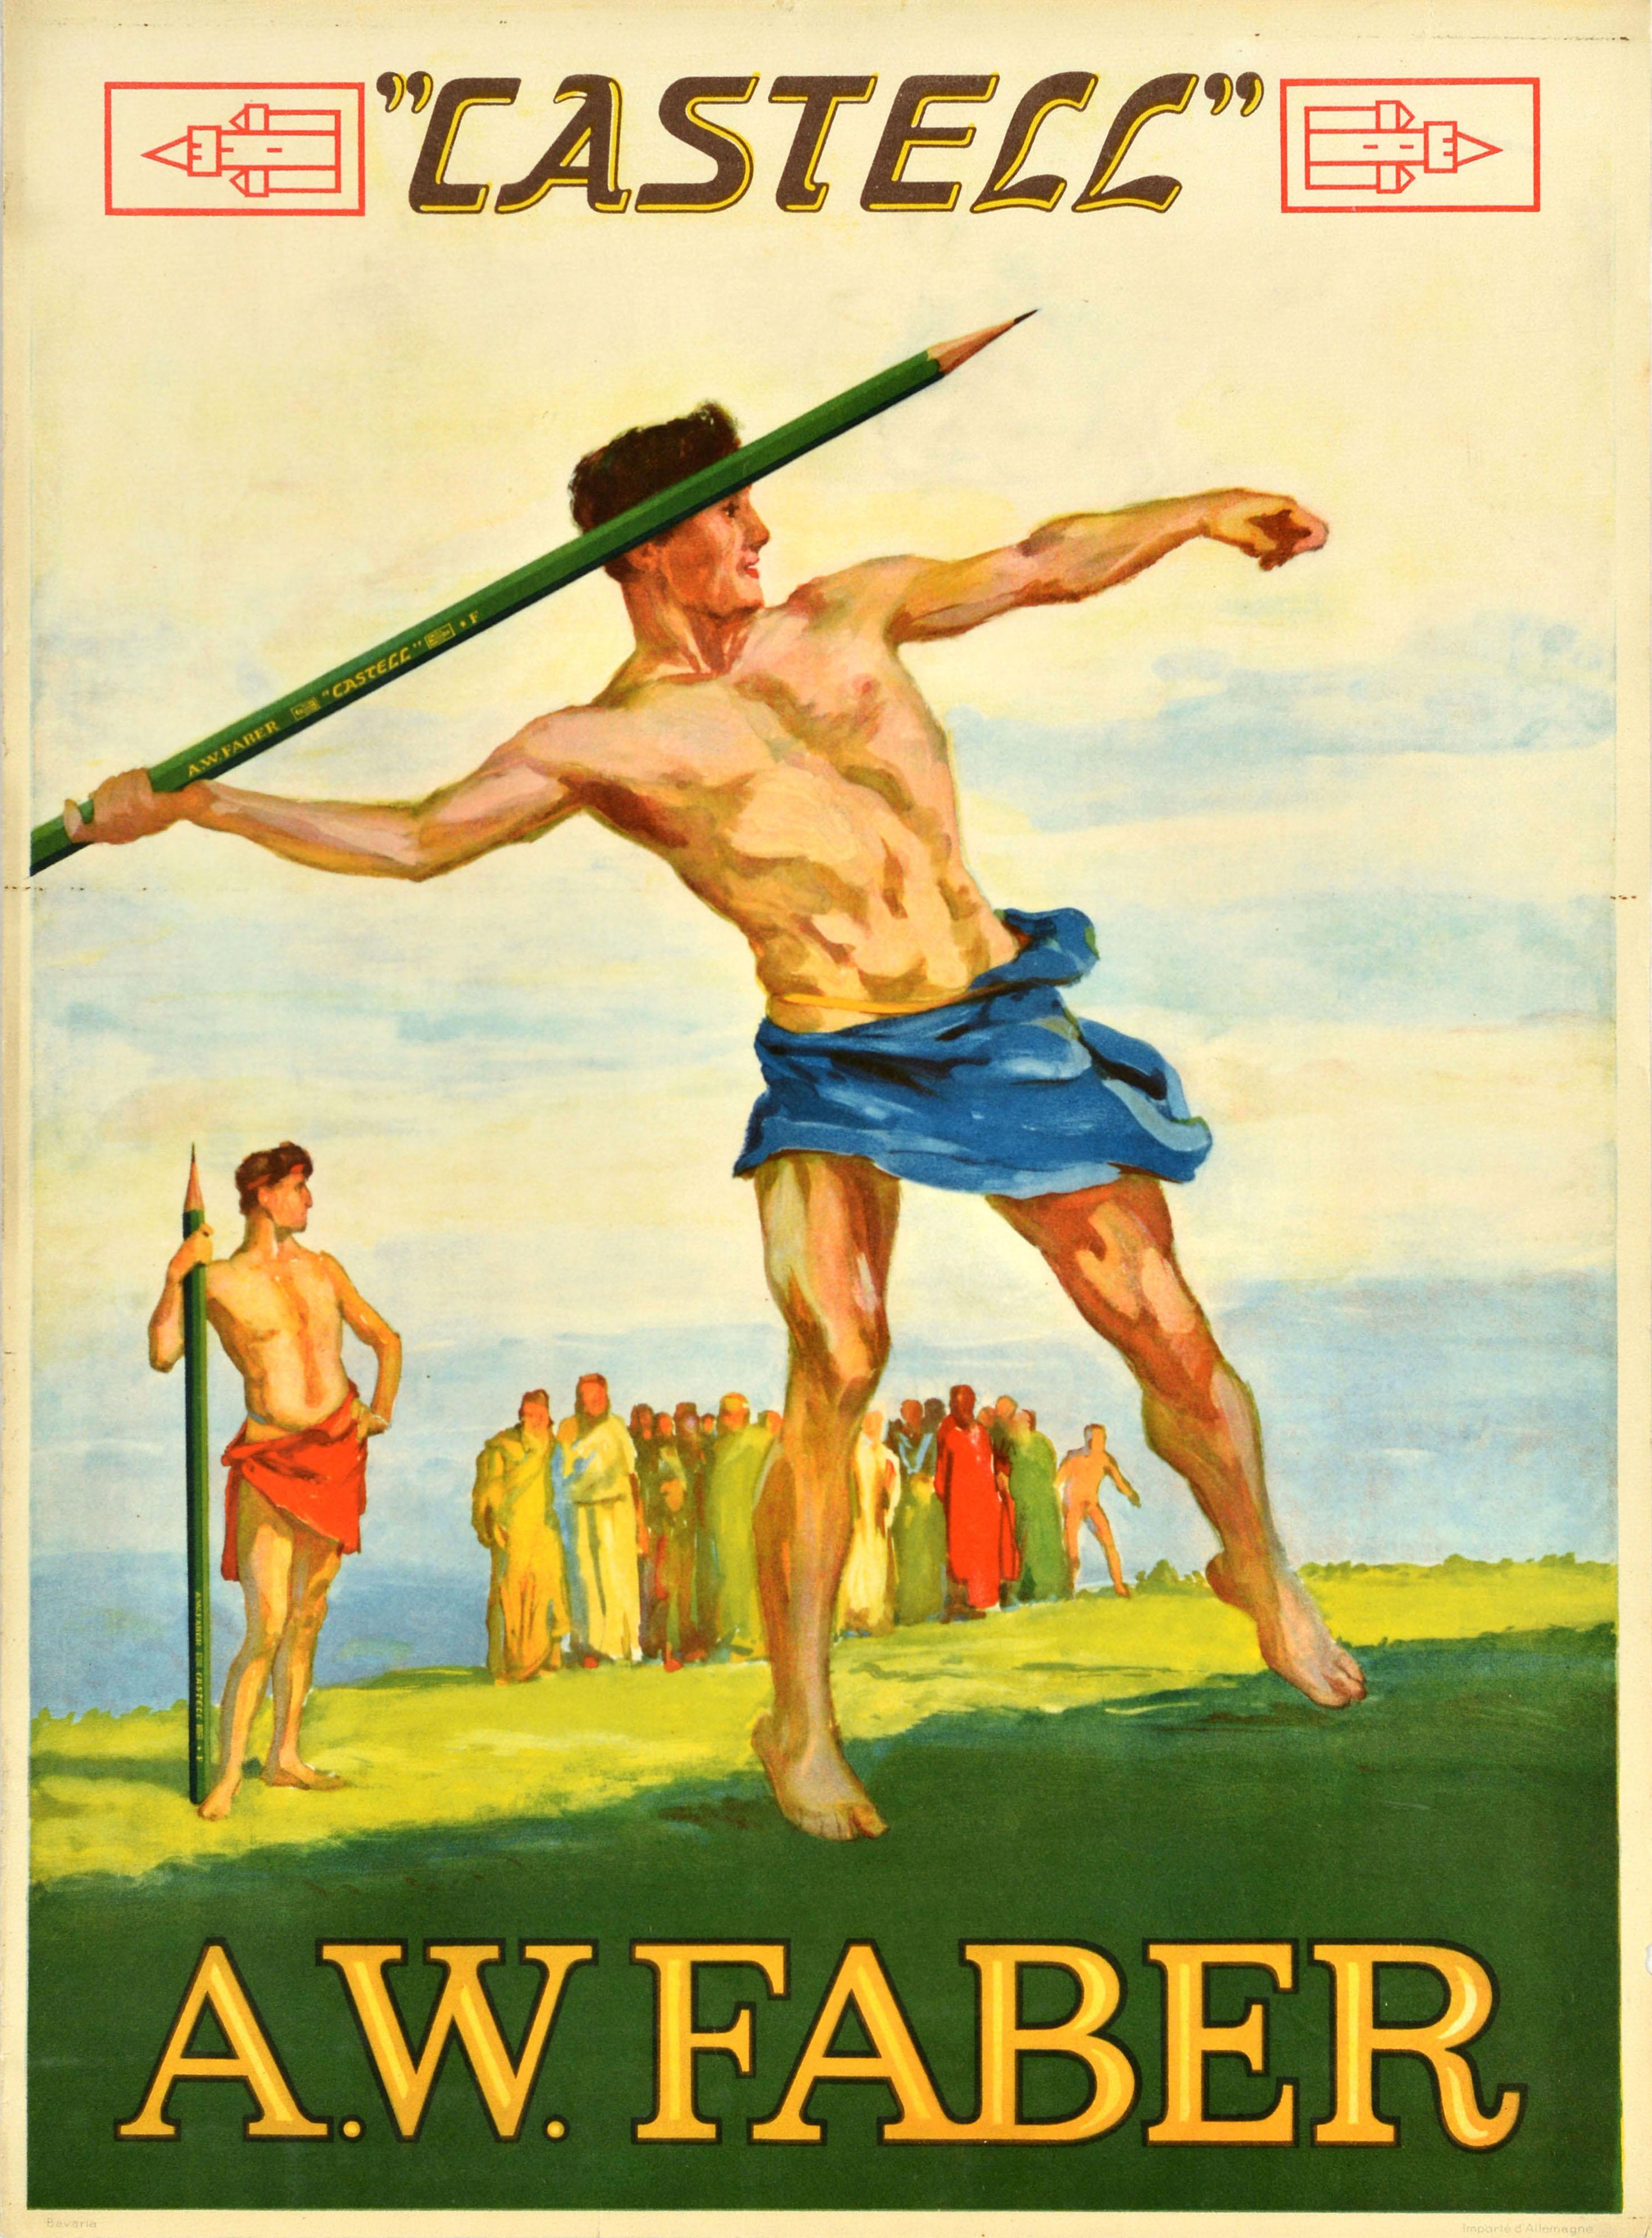 Unknown Print – Original Antikes Werbeplakat AW Faber Castell, Stationery Supplies Athleten, Original